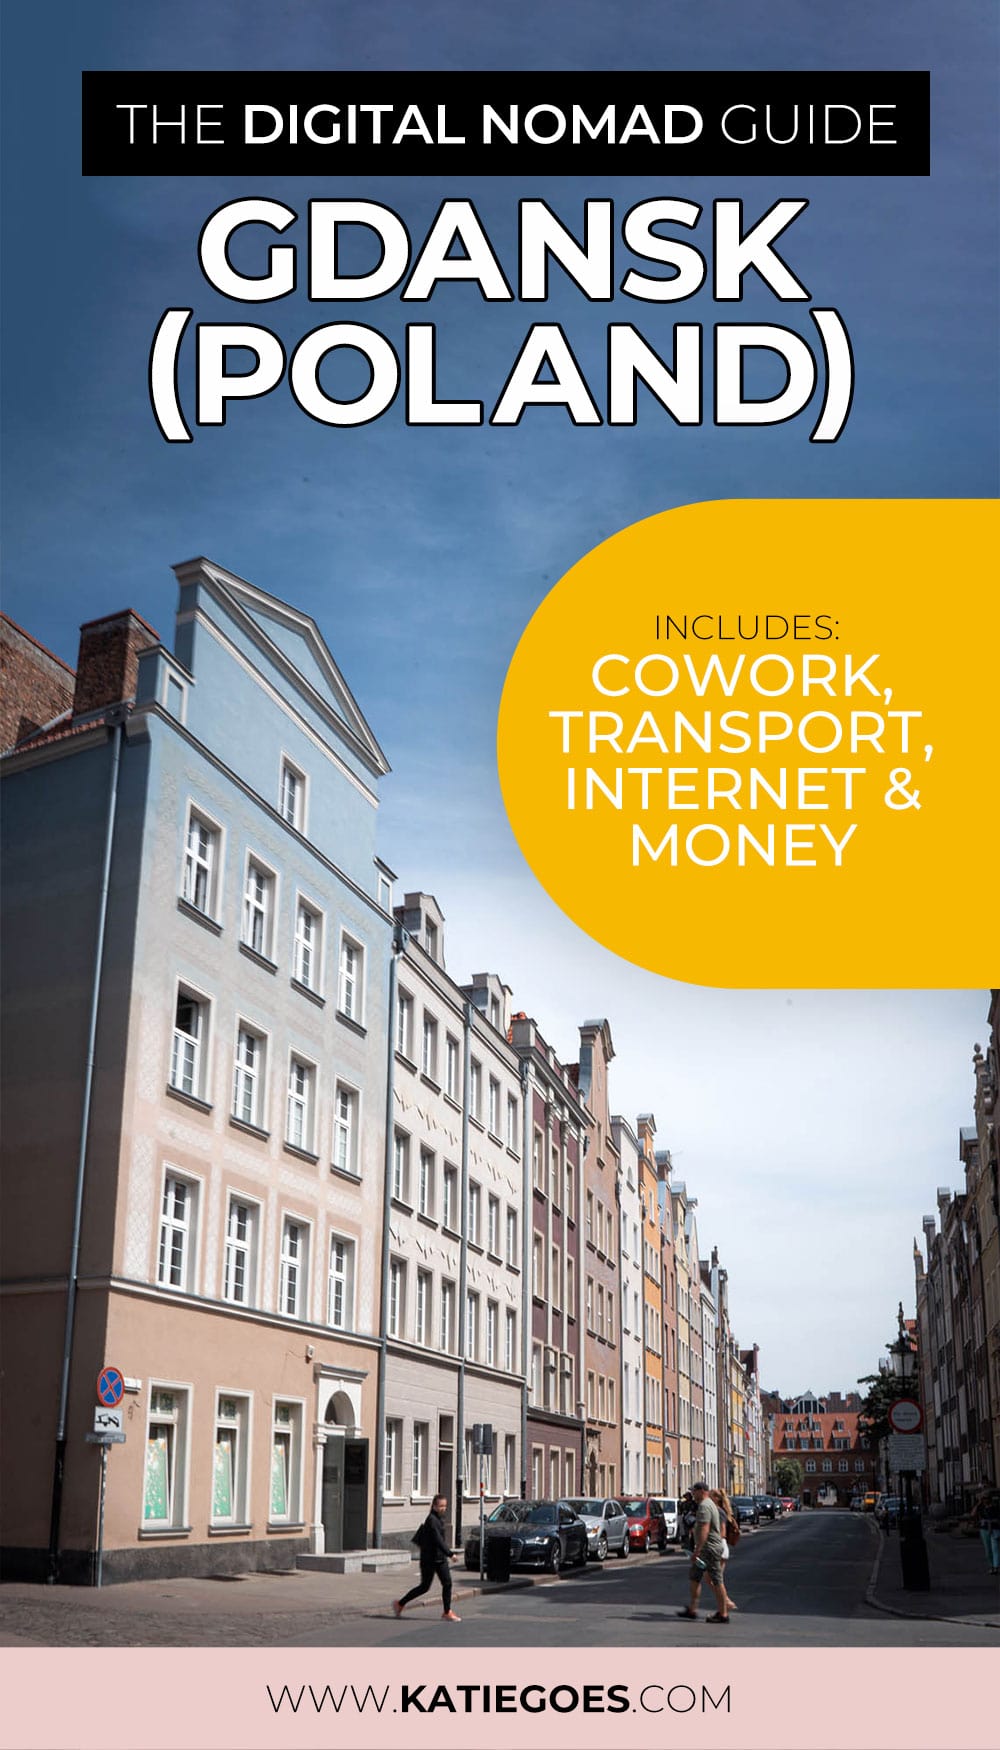 The Digital Nomad Guide: Gdansk (Poland)